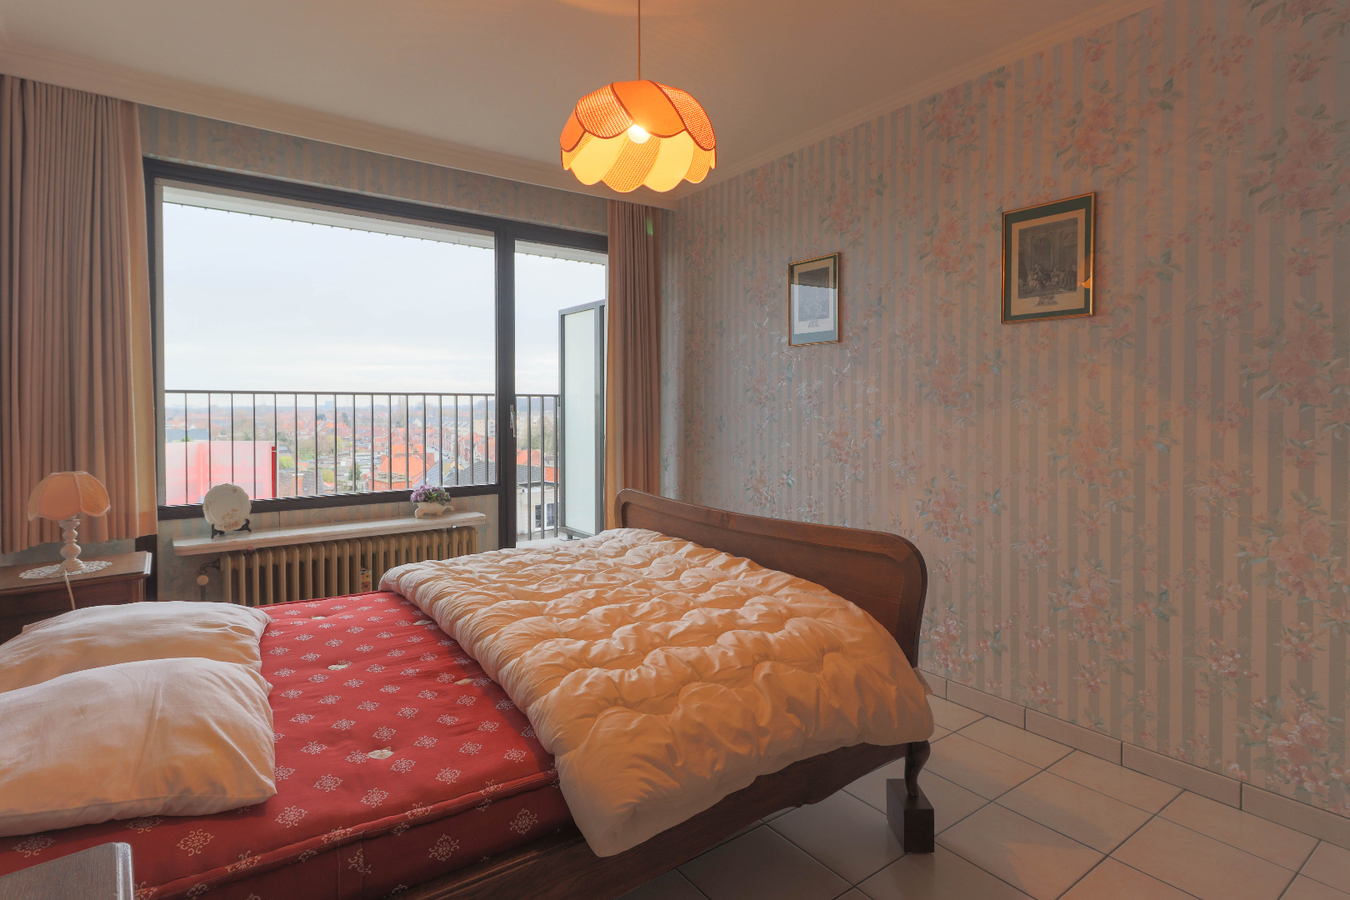 Goed gelegen appartement met 2 slaapkamers te Roeselare! 